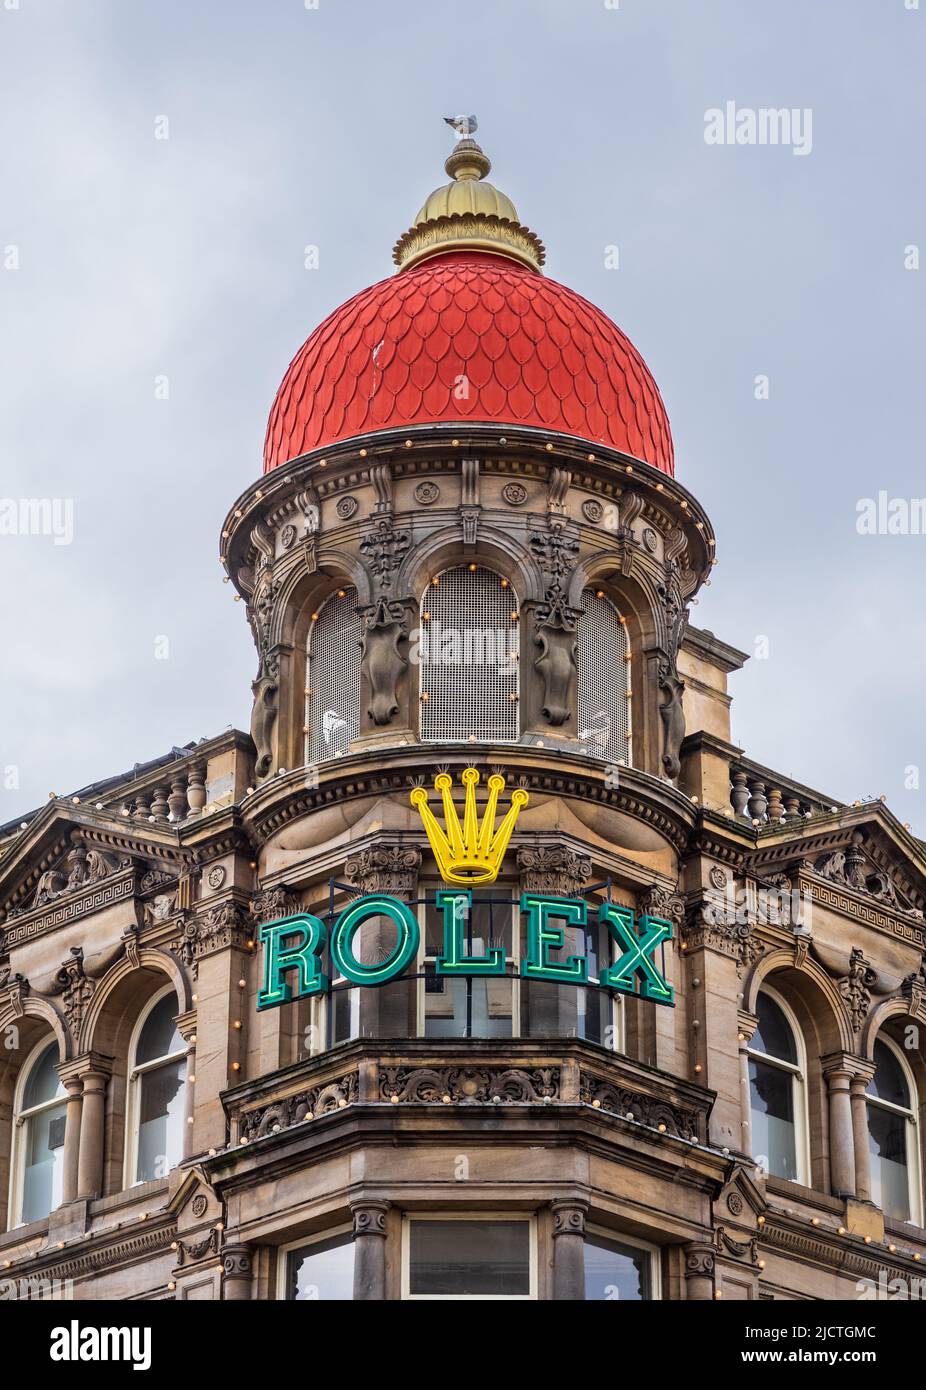 Northern Goldsmiths Store Newcastle upon Tyne. Die markante rote Kuppel und das beleuchtete Rolex-Schild auf den nördlichen Goldschmieden wurden 1778 gegründet. Stockfoto